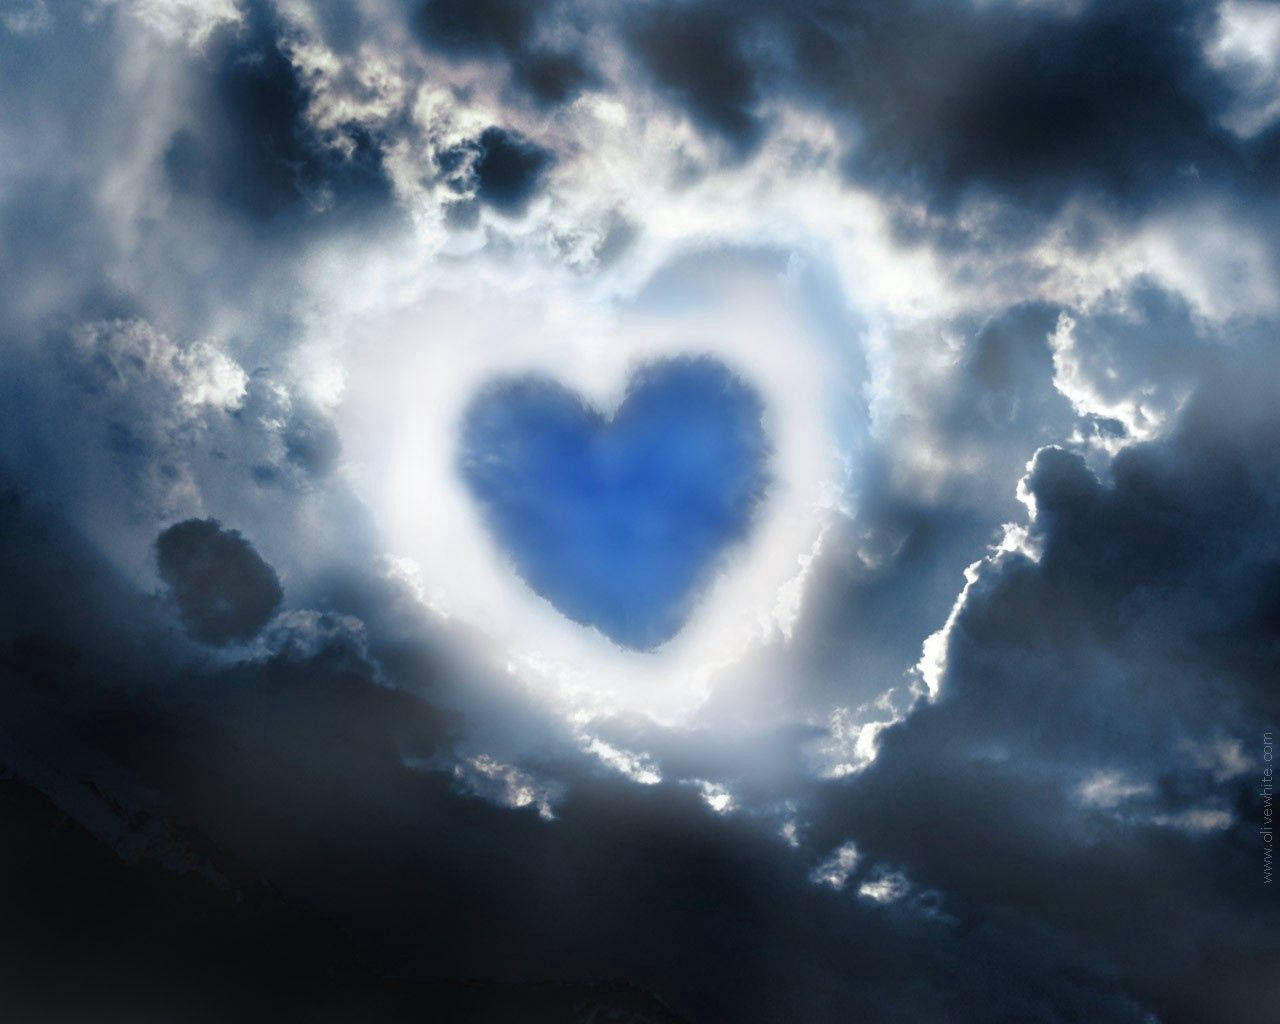 Blue Heart In Dark Sky Wallpaper